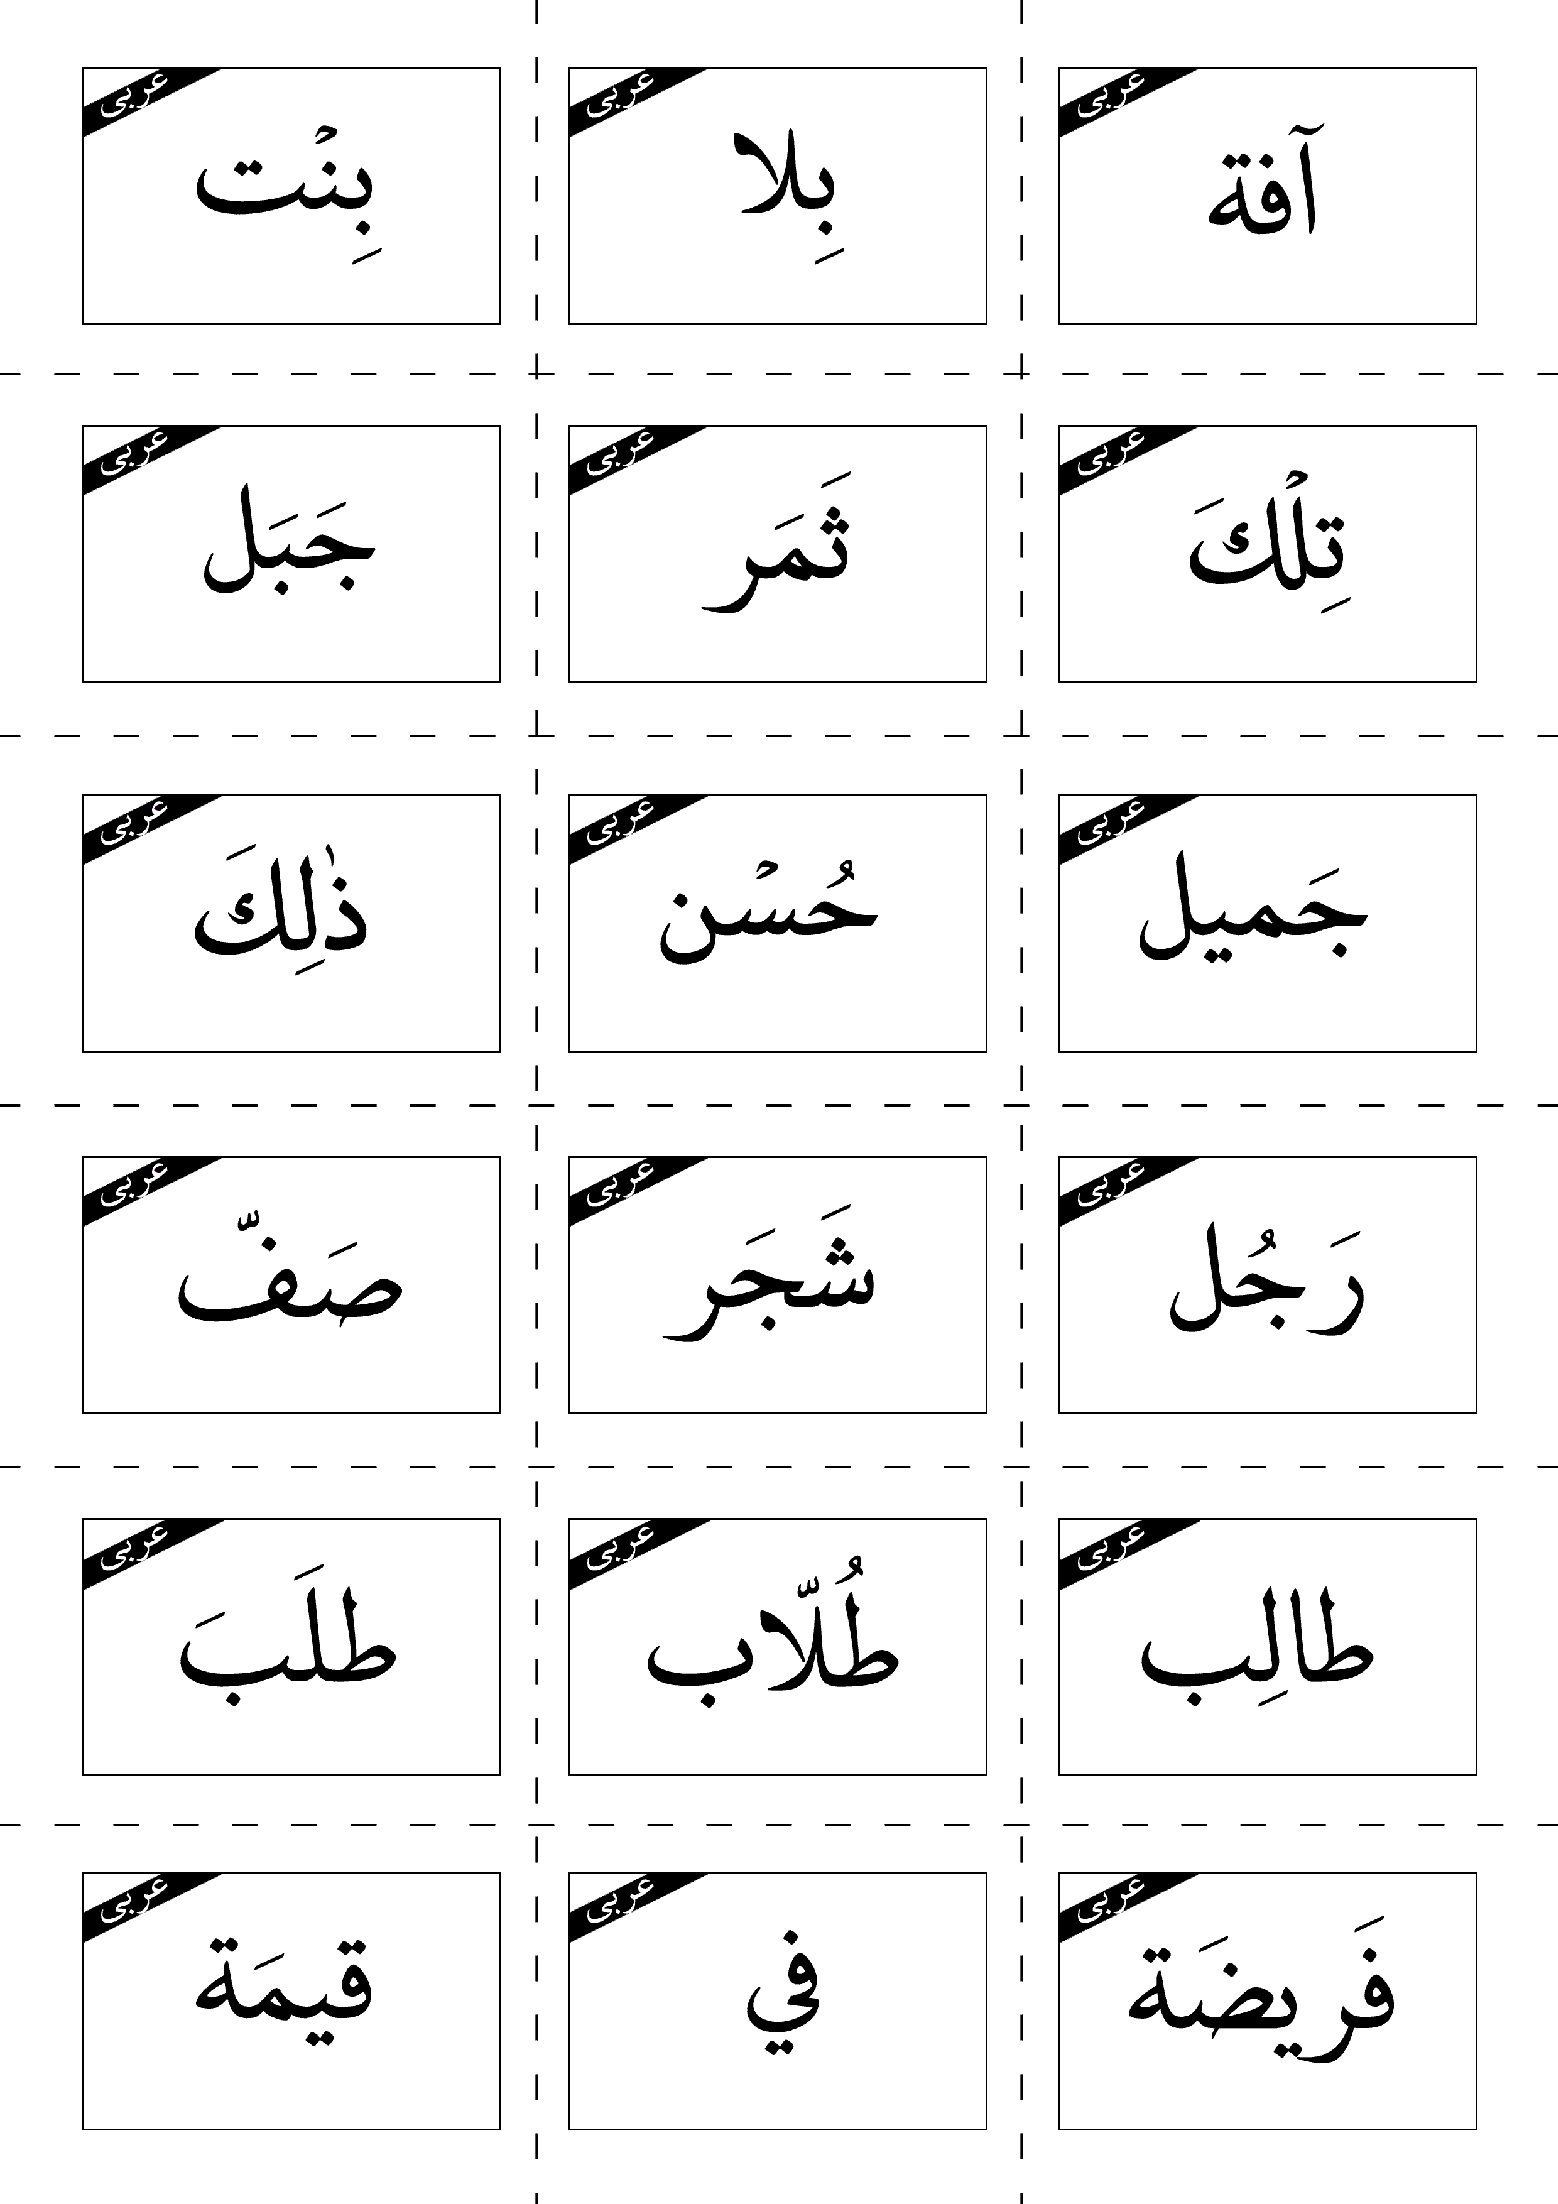 فلش کارت های لغات درس 1 عربی هفتم  | قسمت 1 تا 3: قيمَةُ الْعِلْمِ، نورُ الْکَلامِ و کَنْزُ الْکُنوزِ